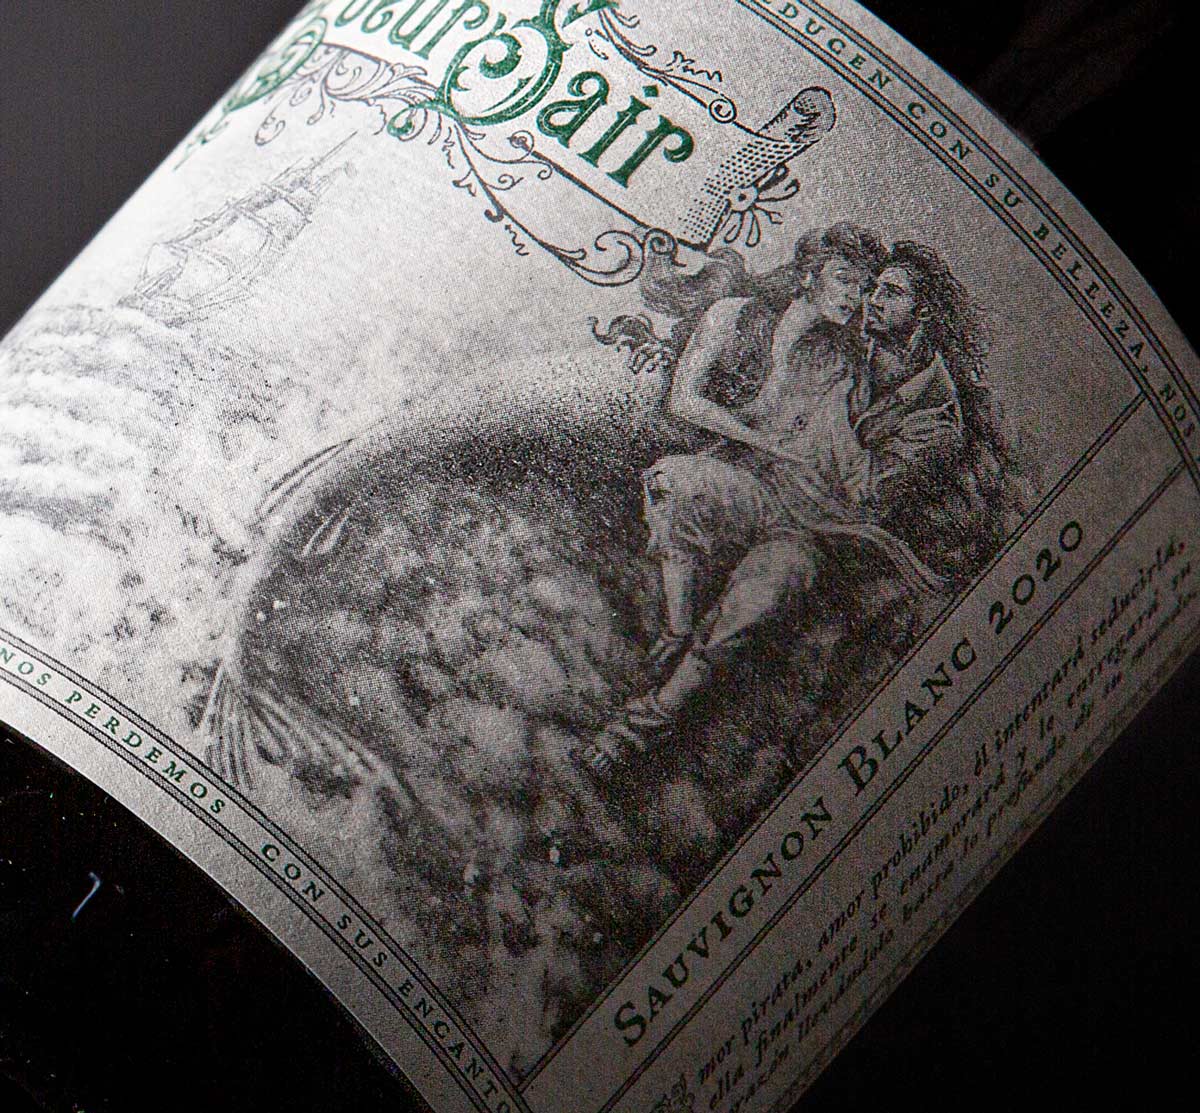 Etiqueta de vino CoeurSair Sauvignon Blanc diseño retro ilustracion sirena piratas